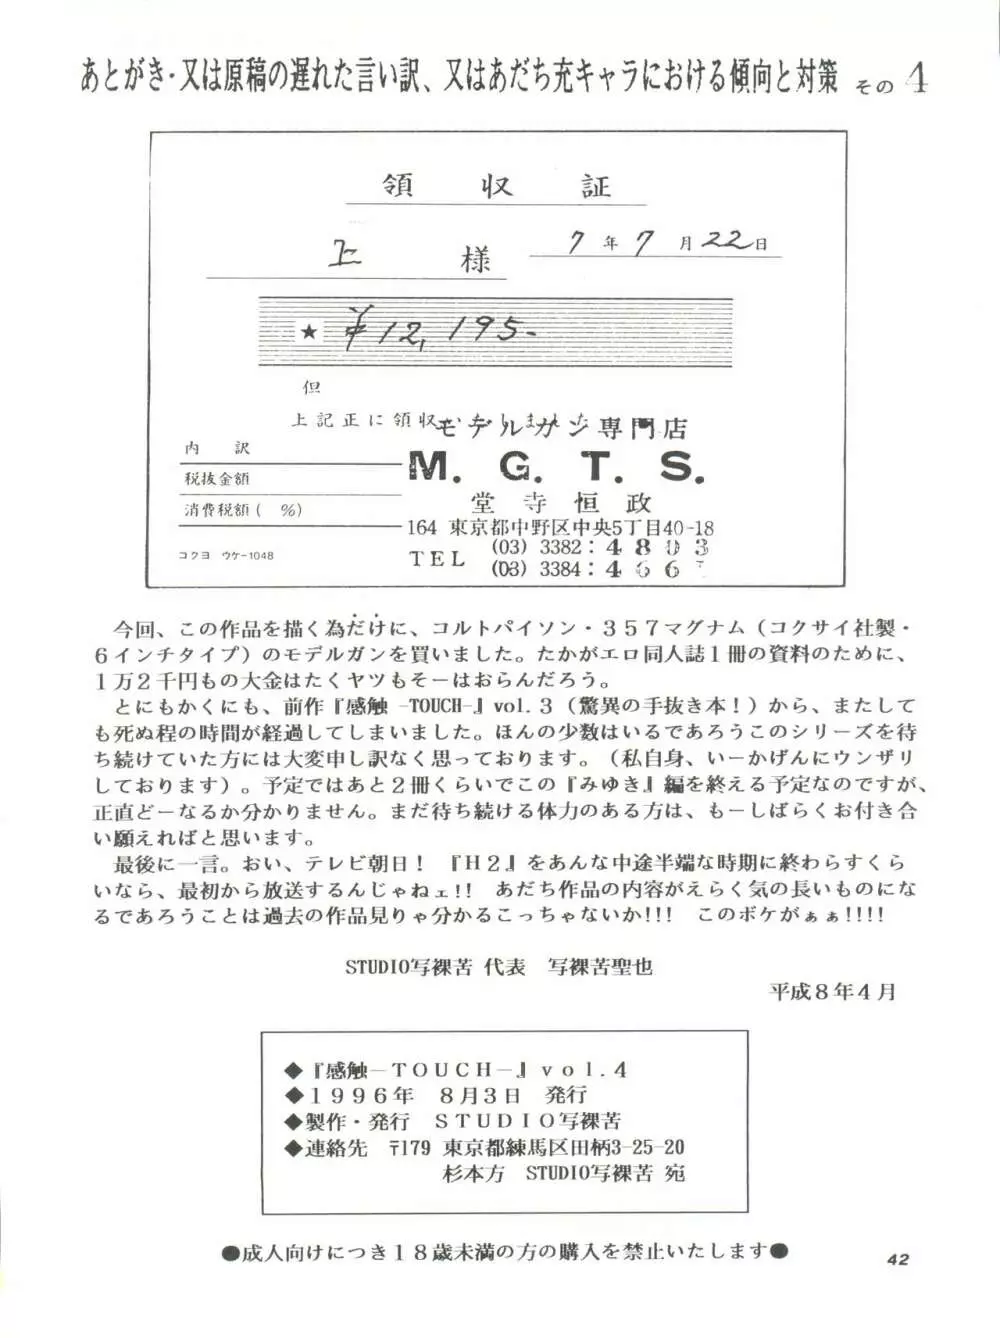 [STUDIO写裸苦 (写裸苦聖也)] 感触 -TOUCH- vol.4 (みゆき) [1996-08-03] Page.42